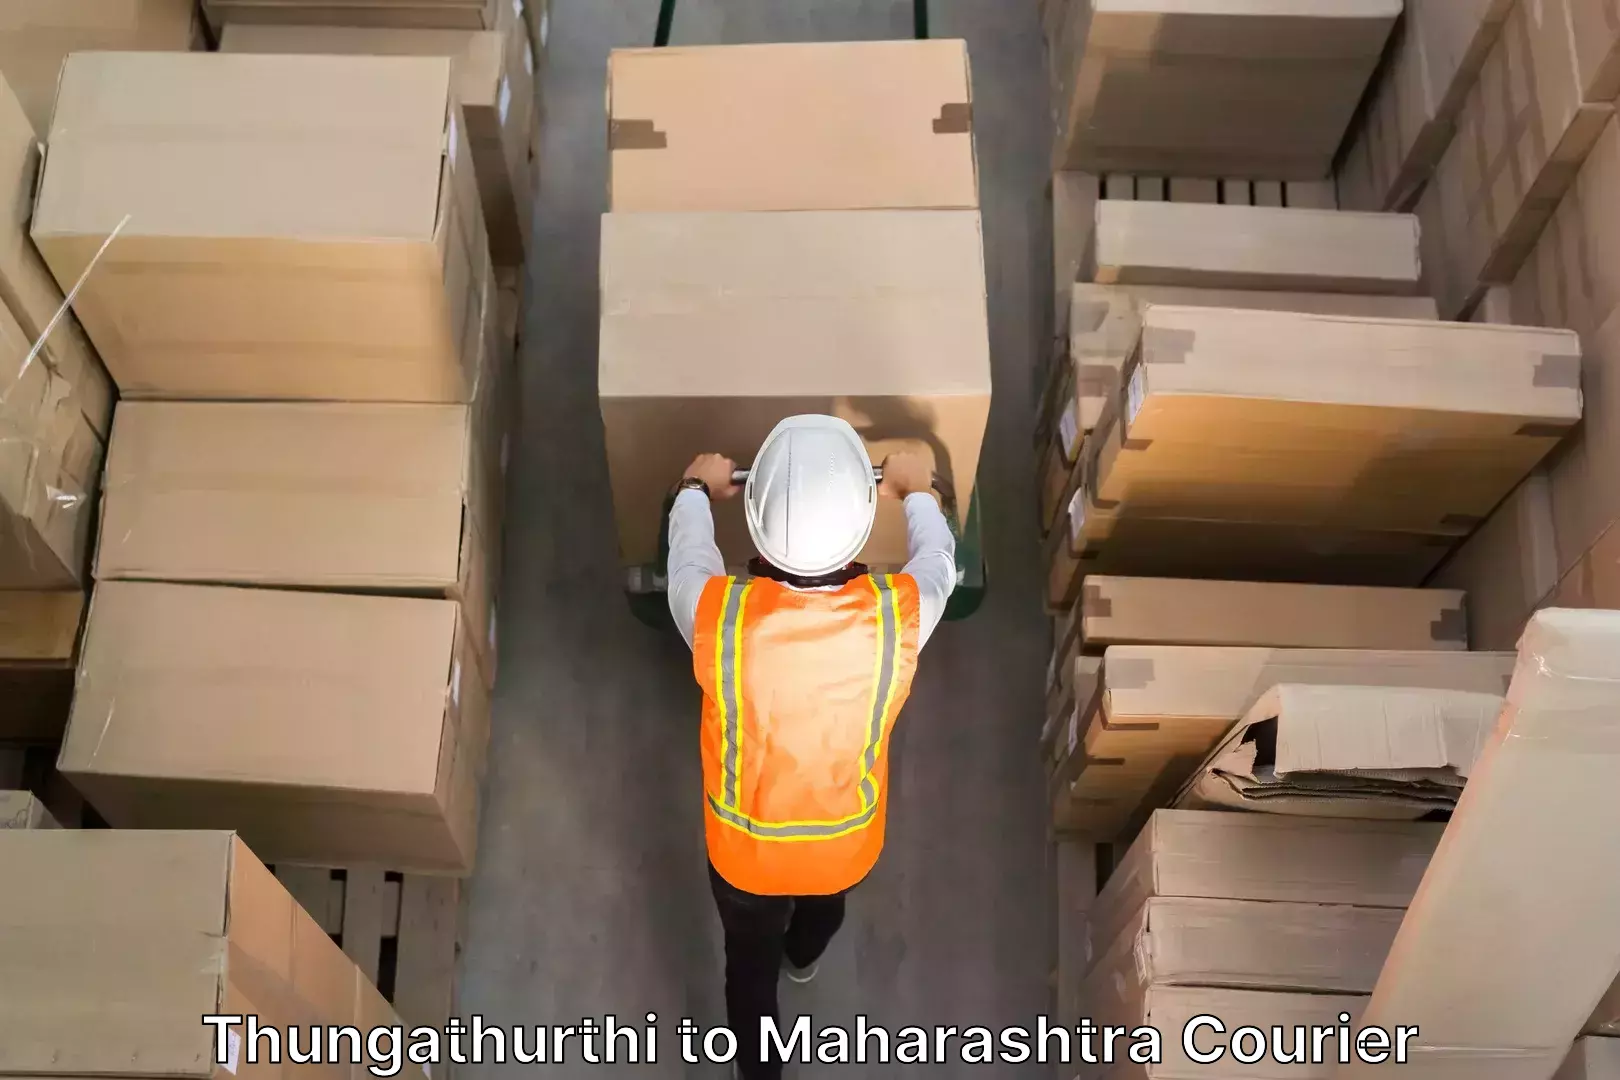 Budget-friendly movers Thungathurthi to Maharashtra